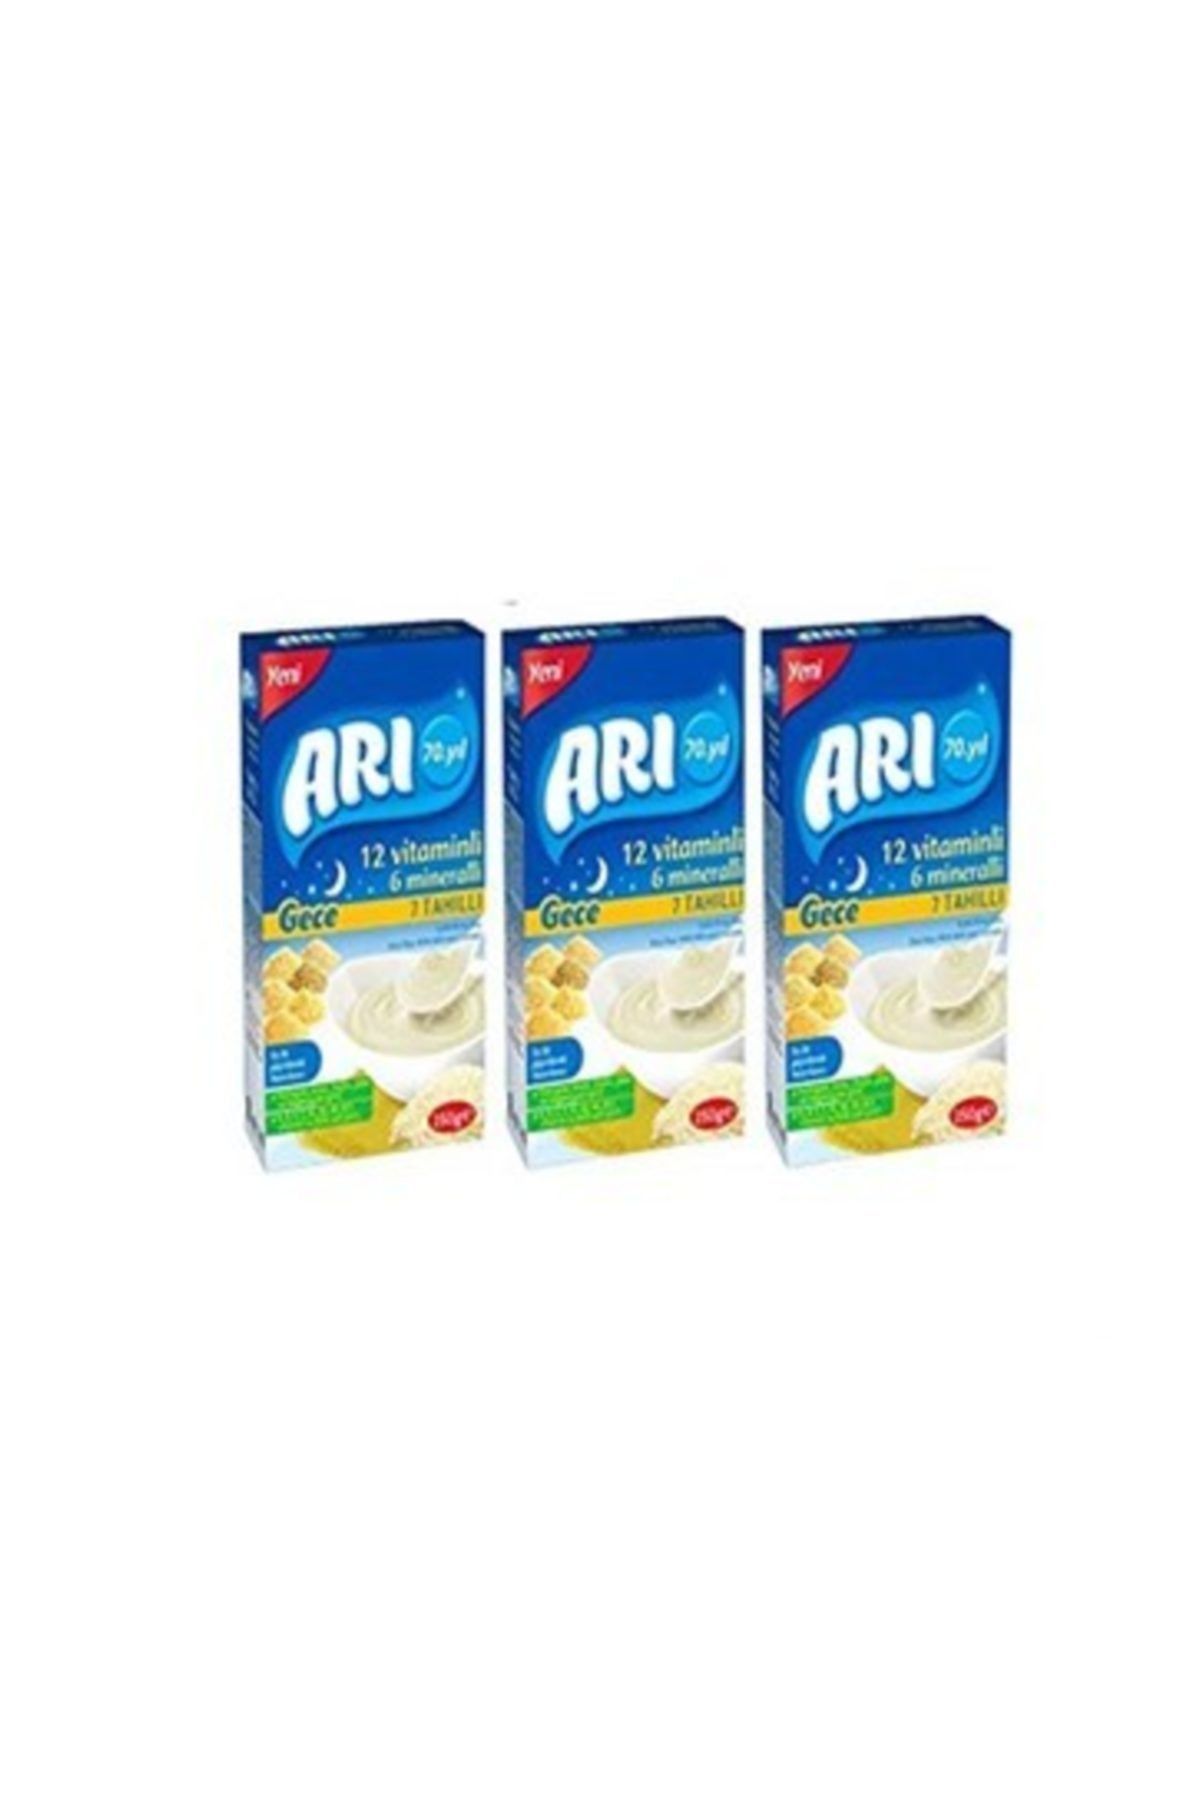 ARI 12 Vitaminlı 6 Mineralli Gece 7 Tahıllı Sütlü Pirinç Unu Bebek Maması 250 gr 3'lü Paket